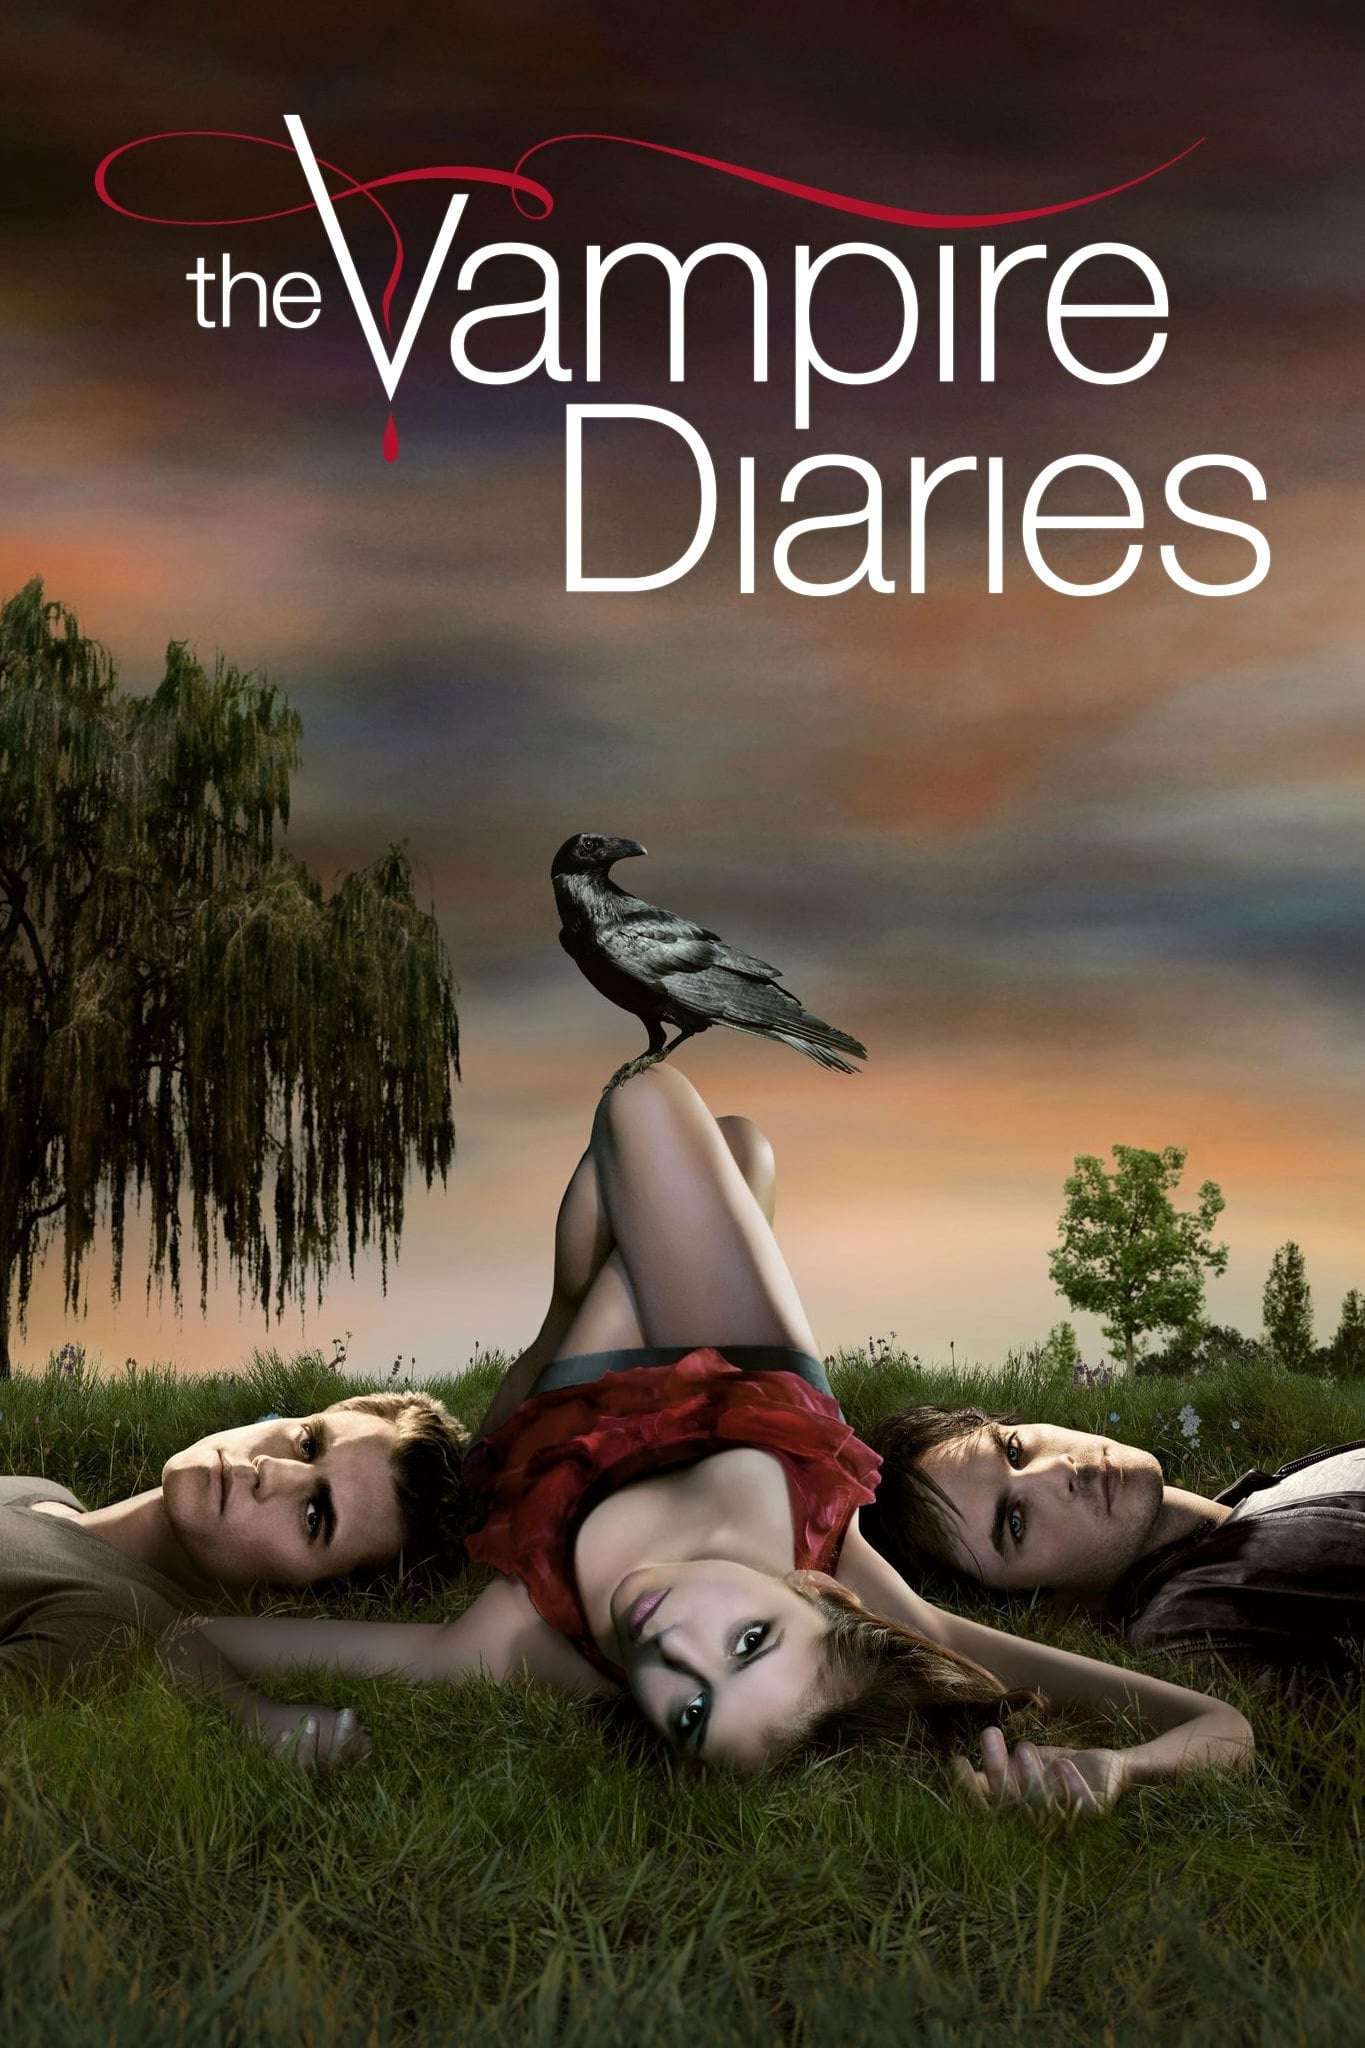 Caratula de The Vampire Diaries (Crónicas vampíricas) 